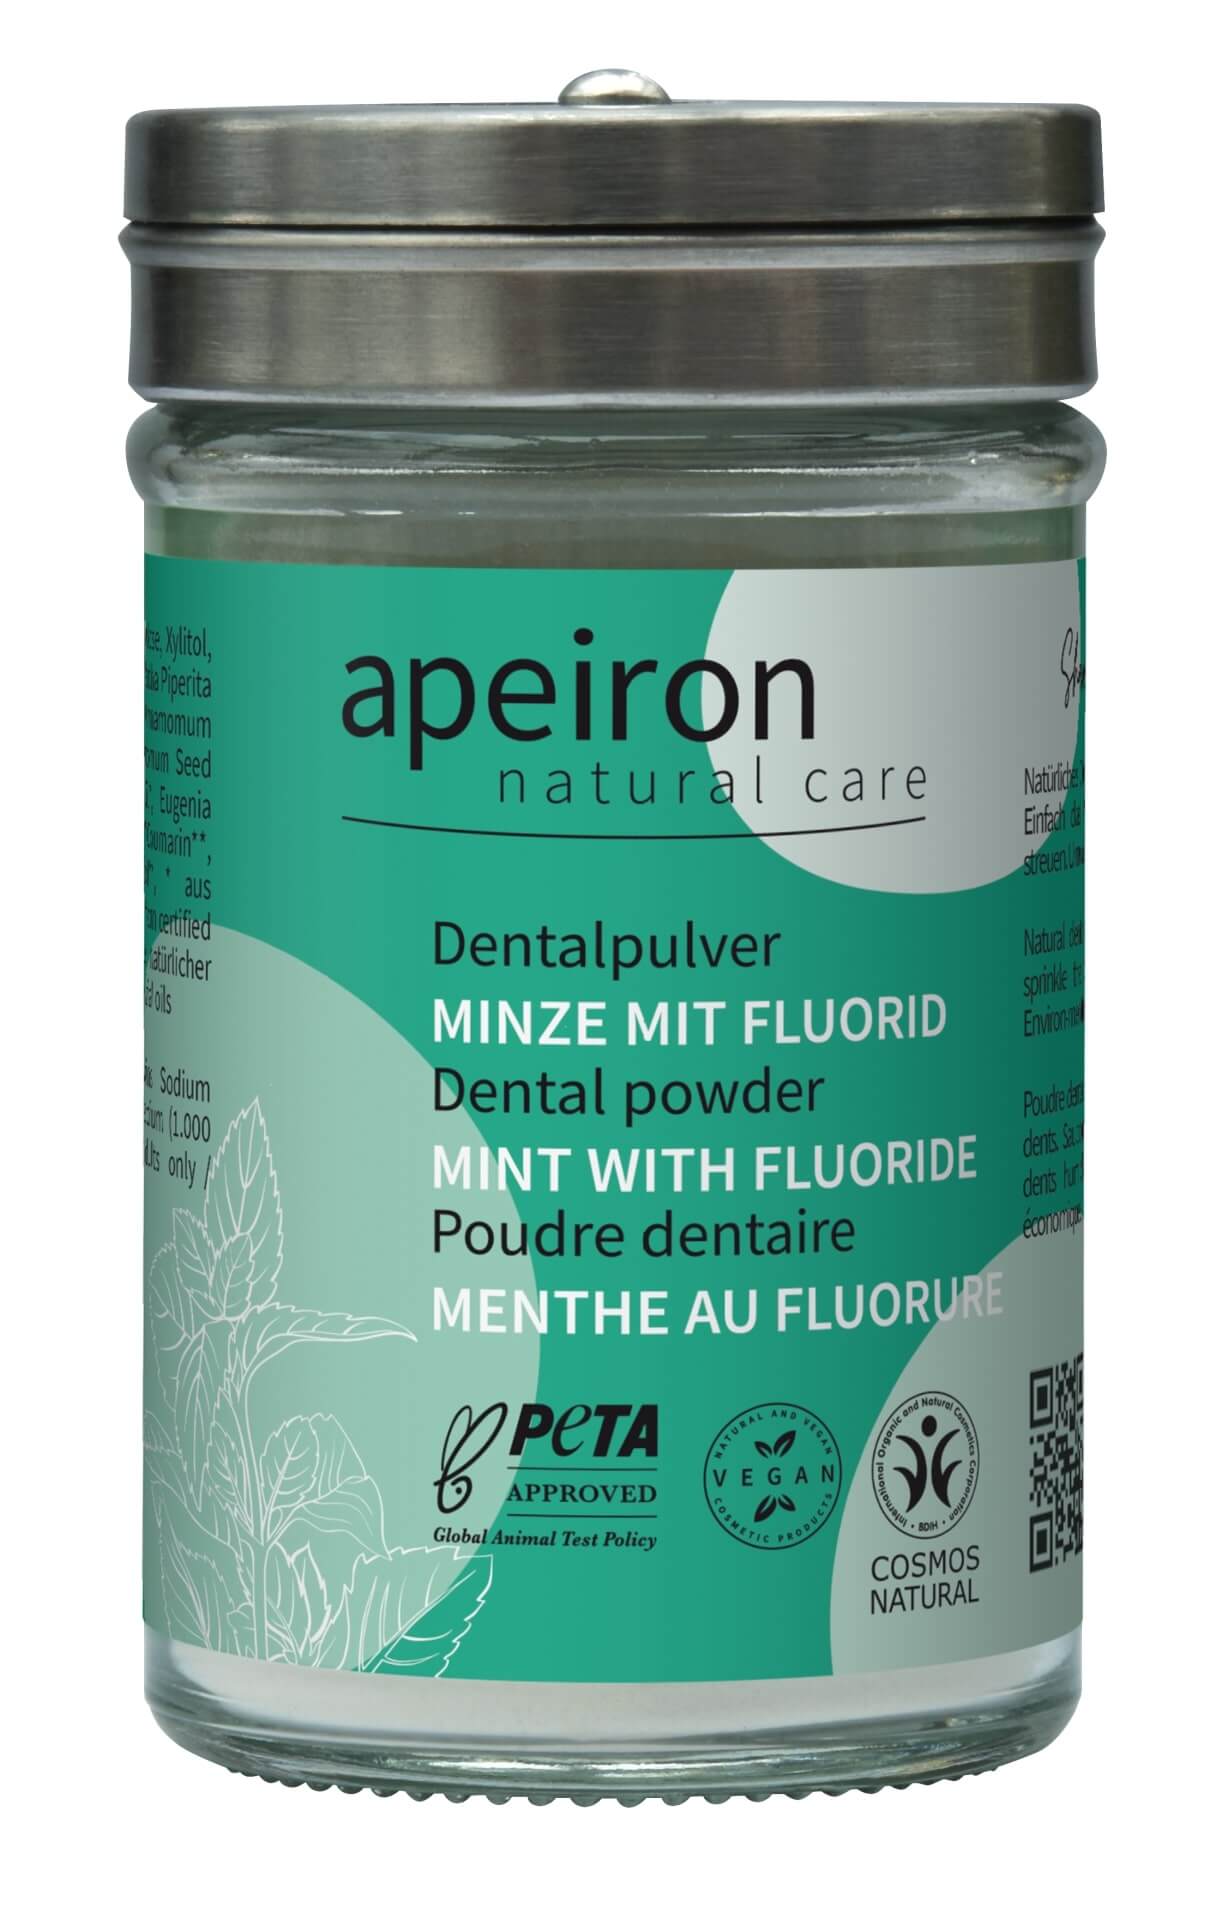 Dentalpulver Minze mit Fluorid, Apeiron